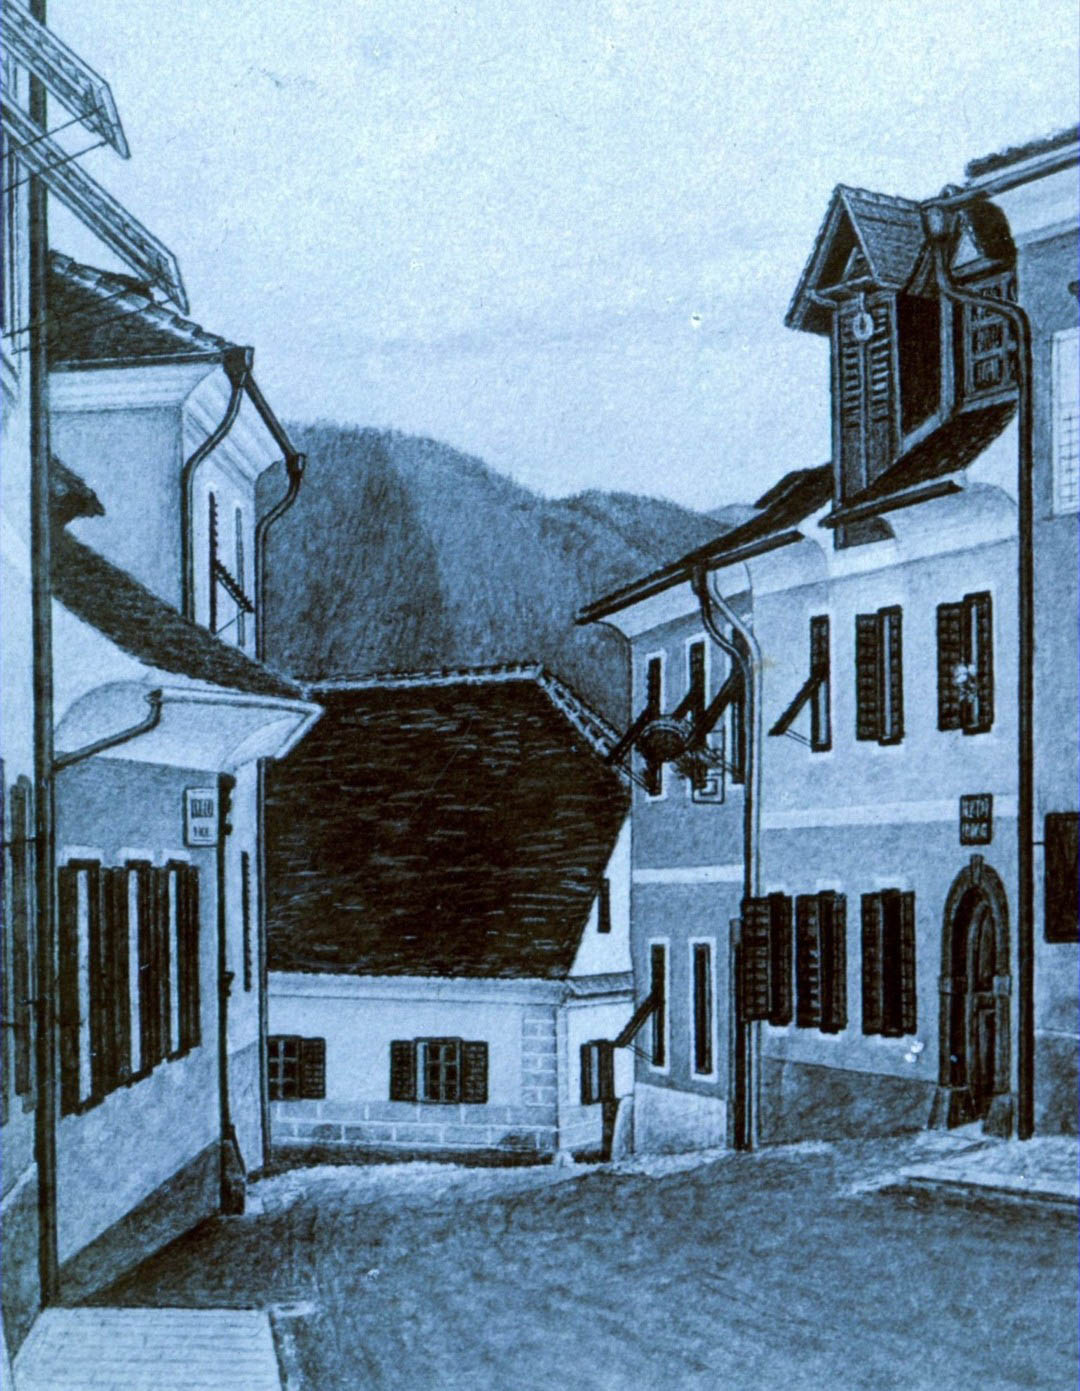 d2) Katrinekova in Burclnova hiša, 1899 (DAR - Rojec, retuša)